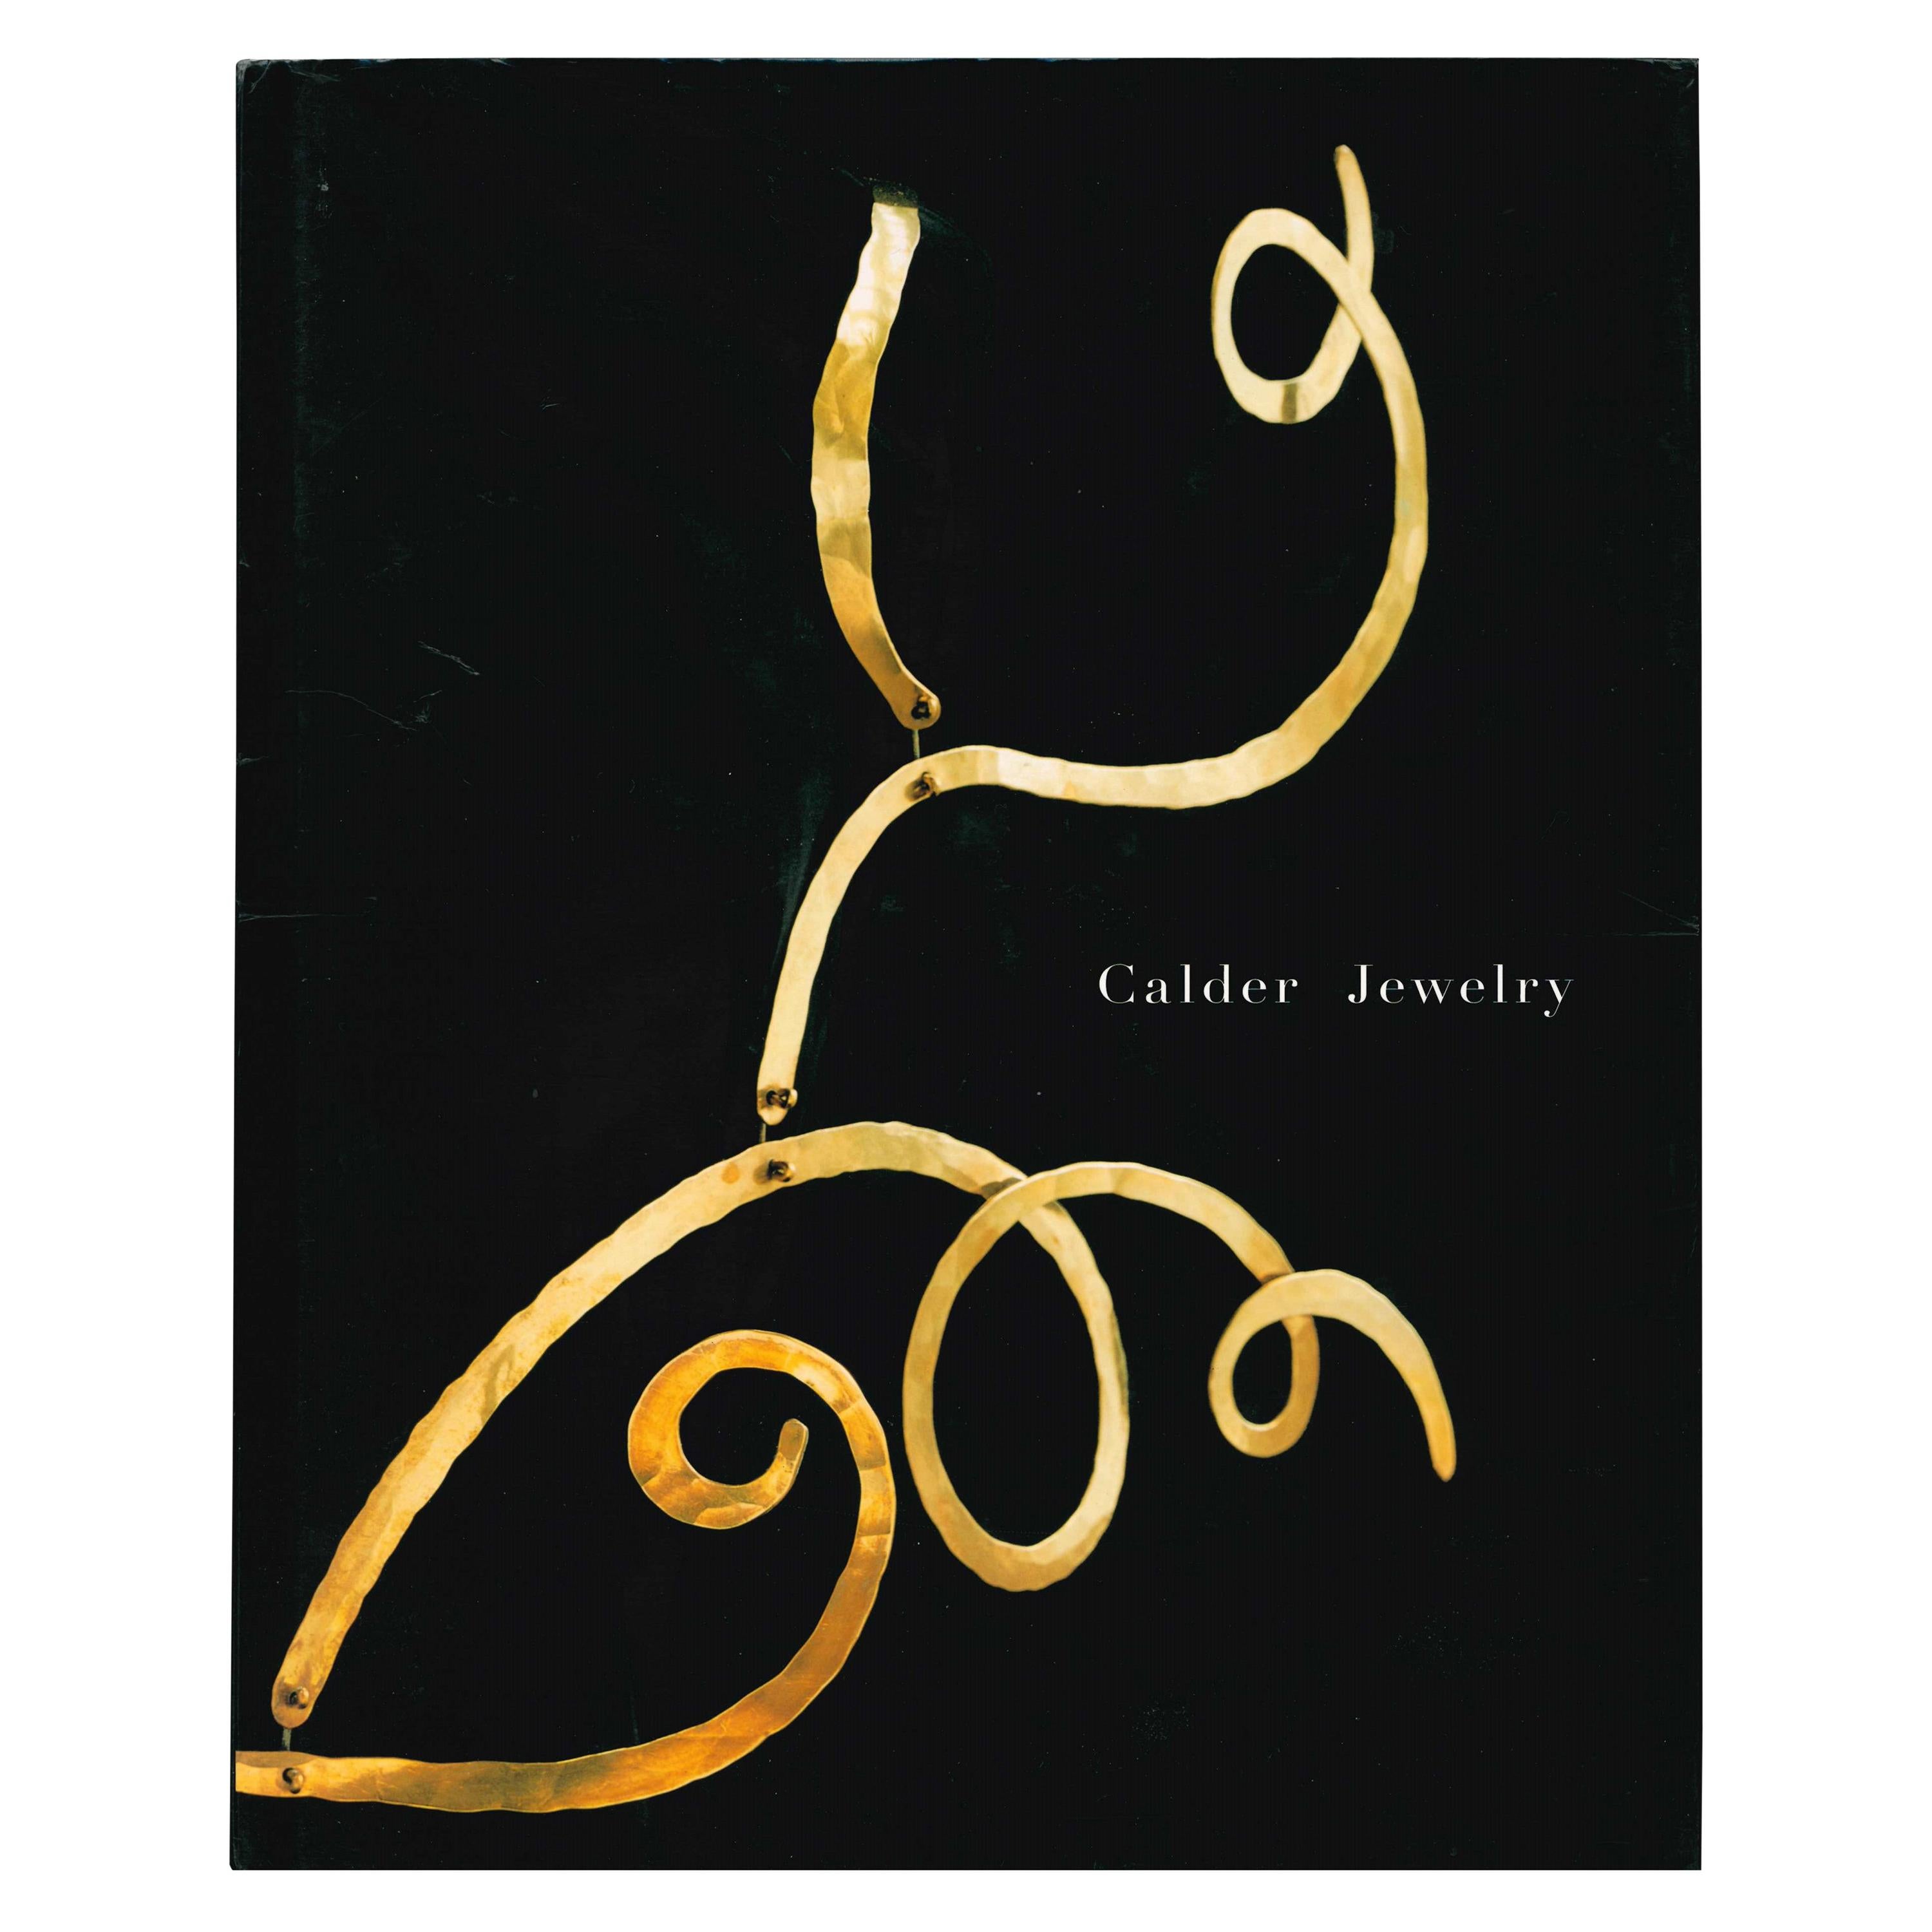 Book, Calder Jewelry